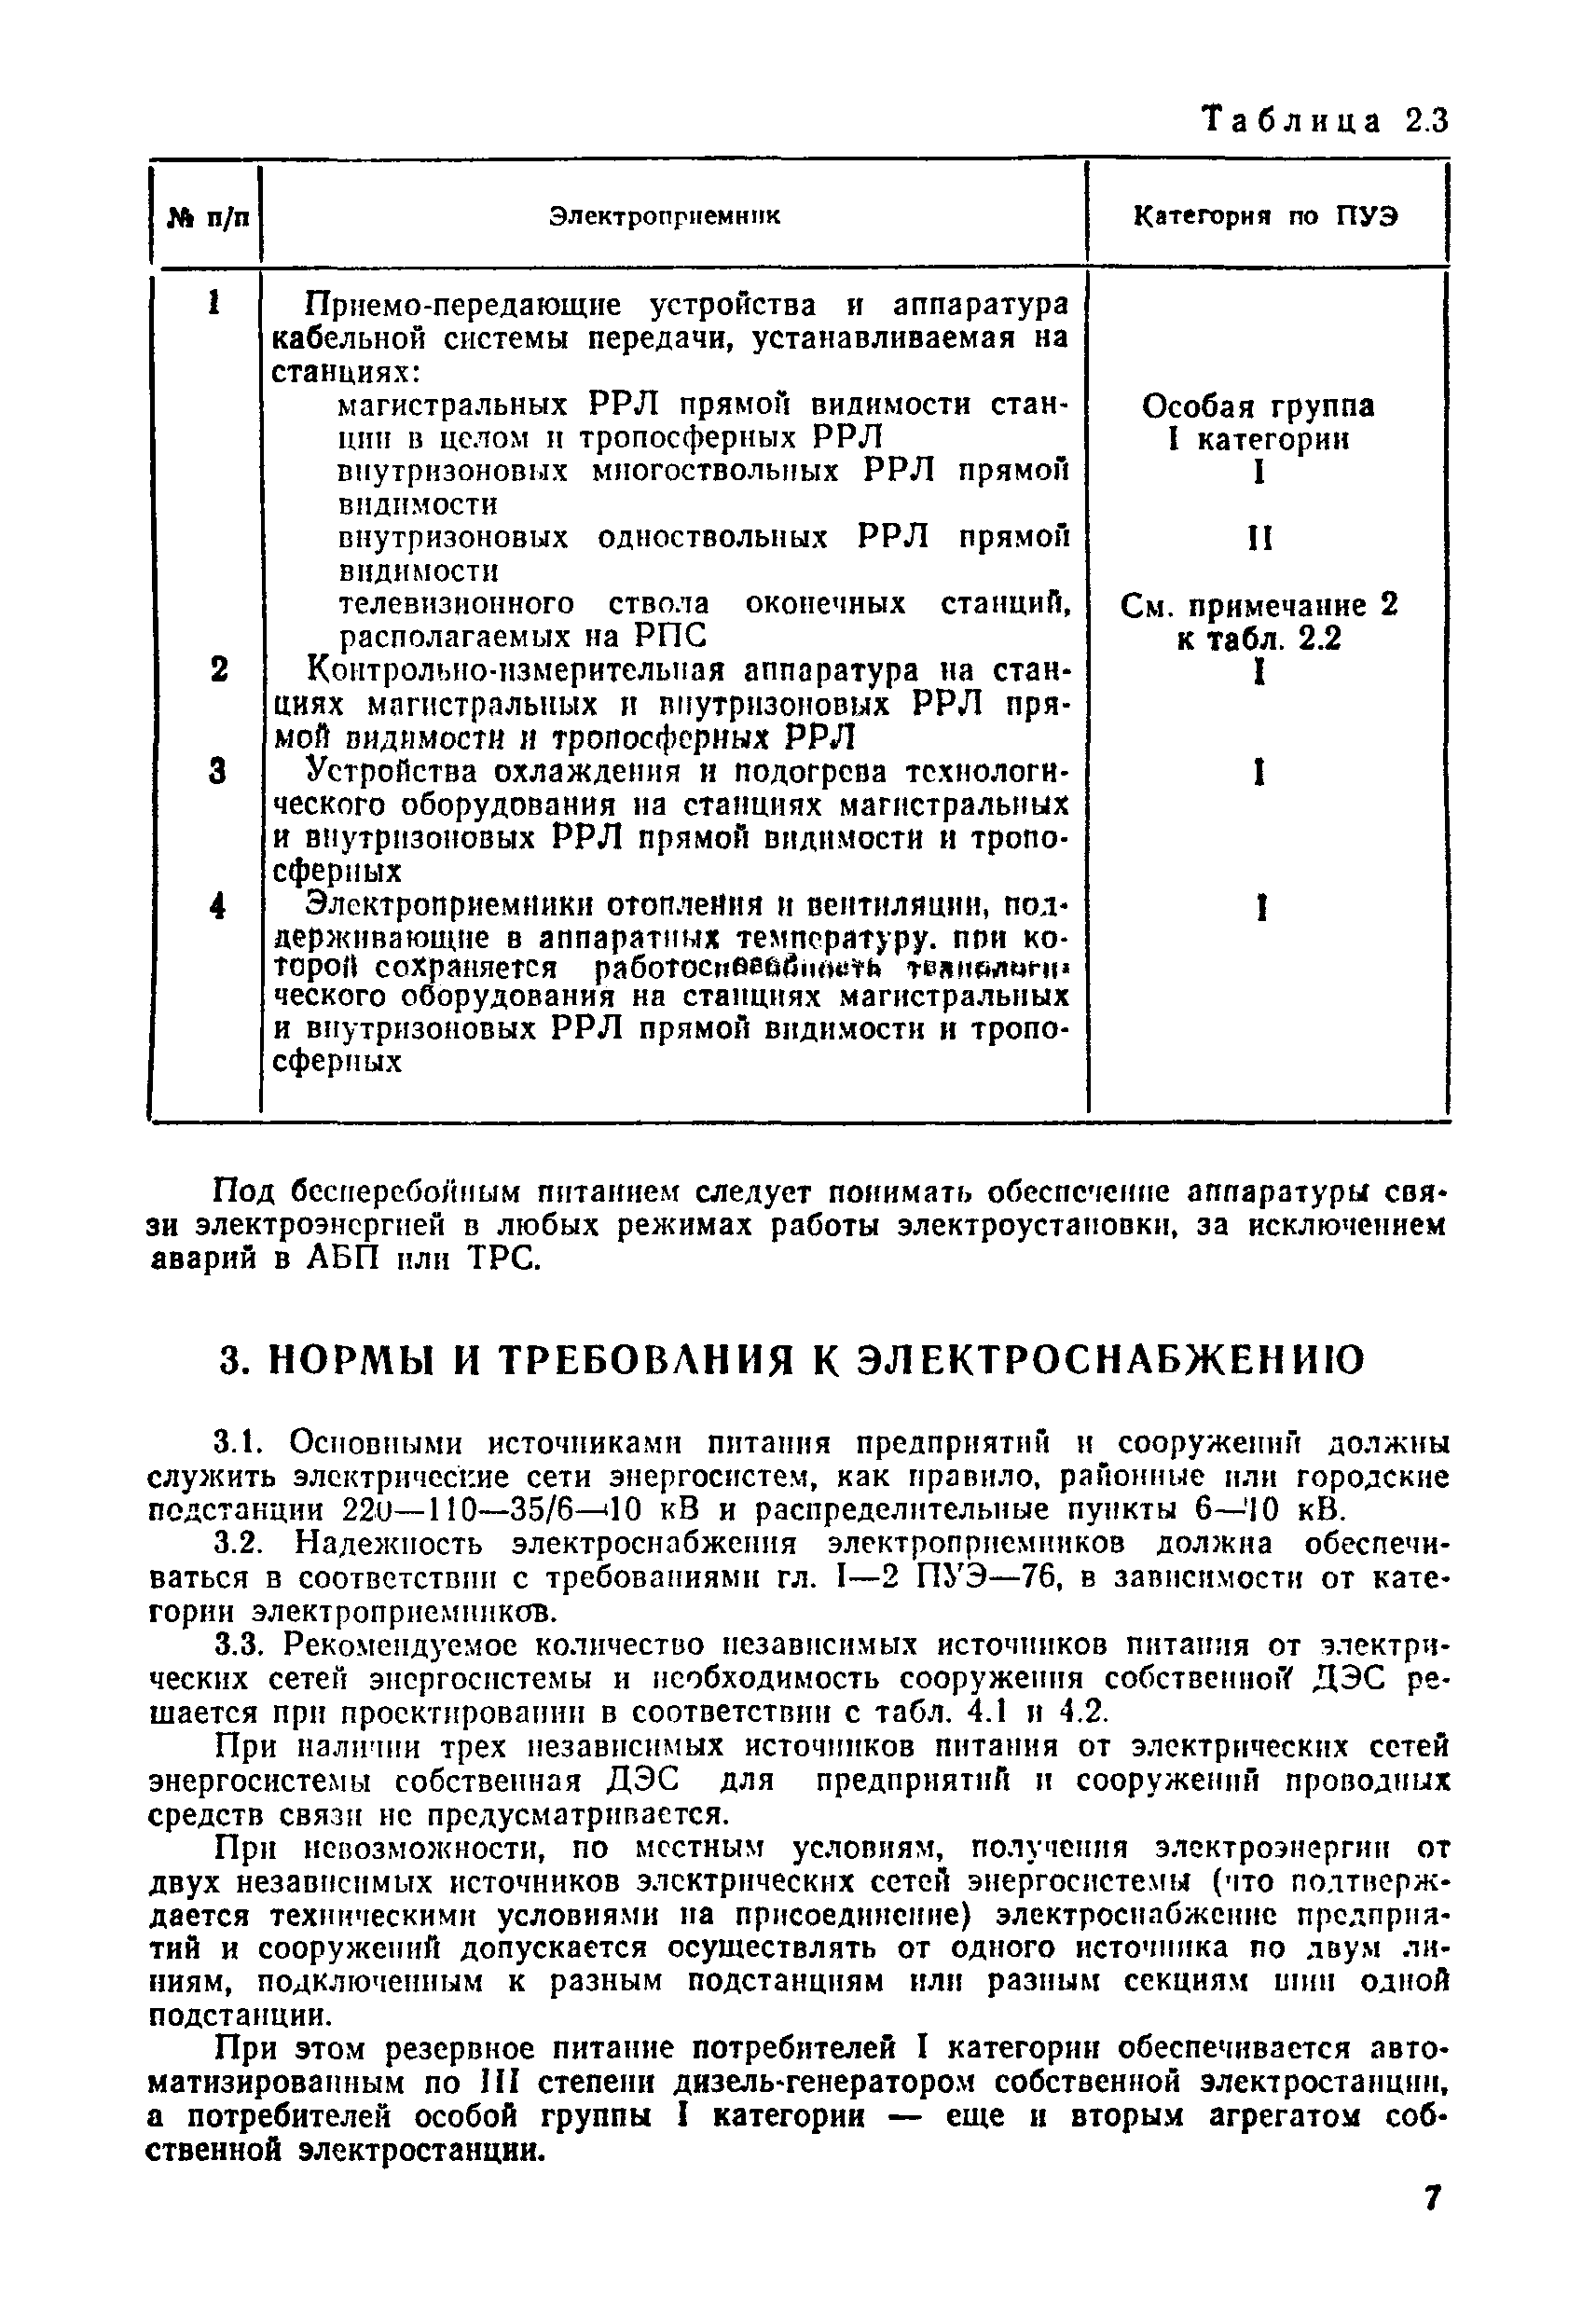 ВНТП 332-81